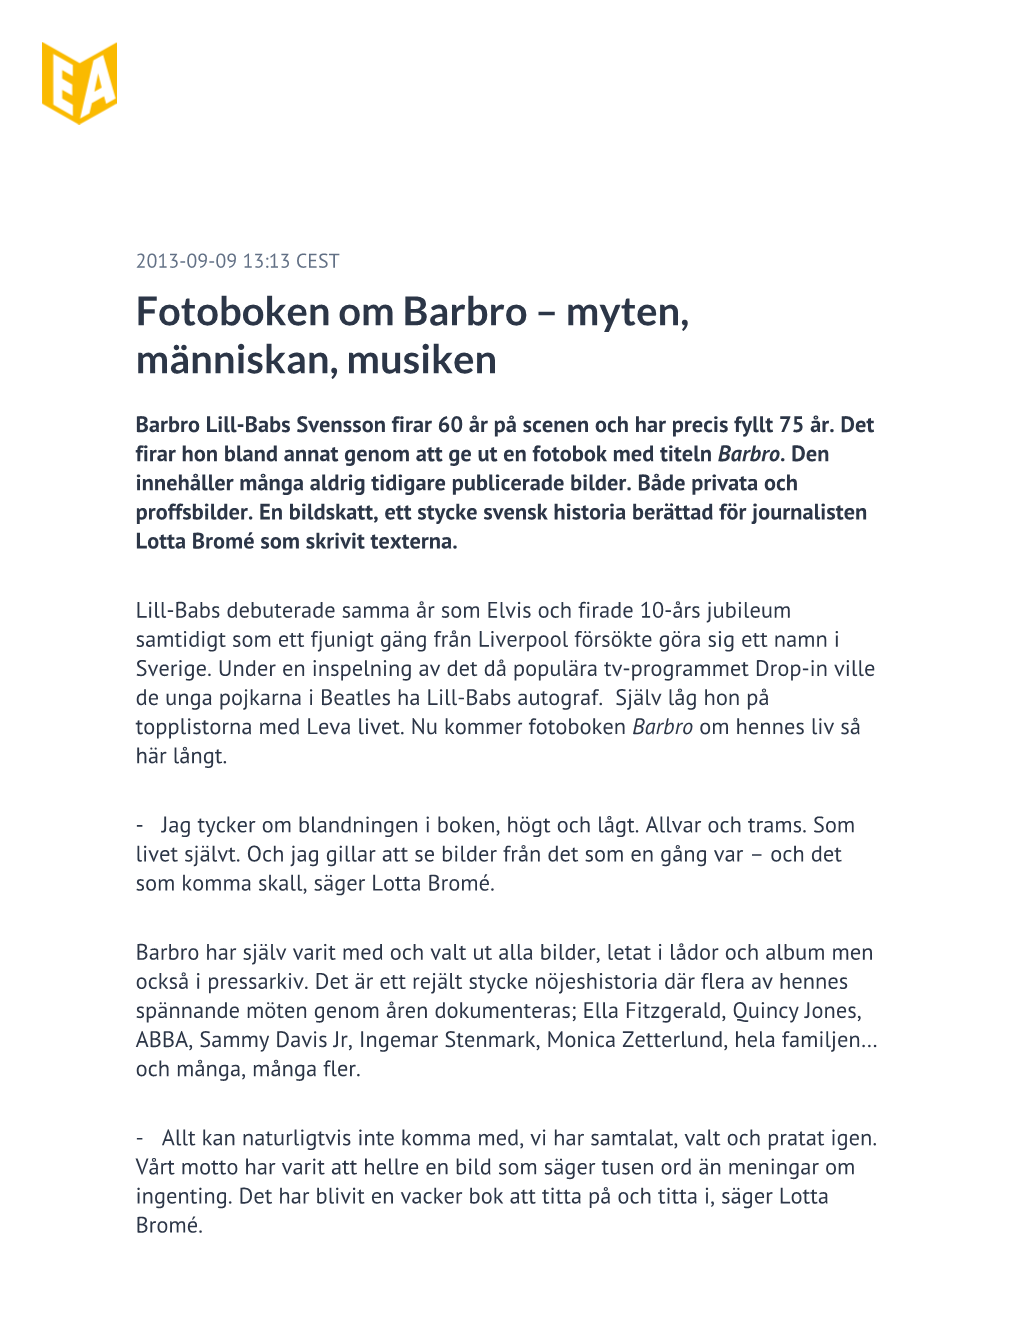 Fotoboken Om Barbro – Myten, Människan, Musiken